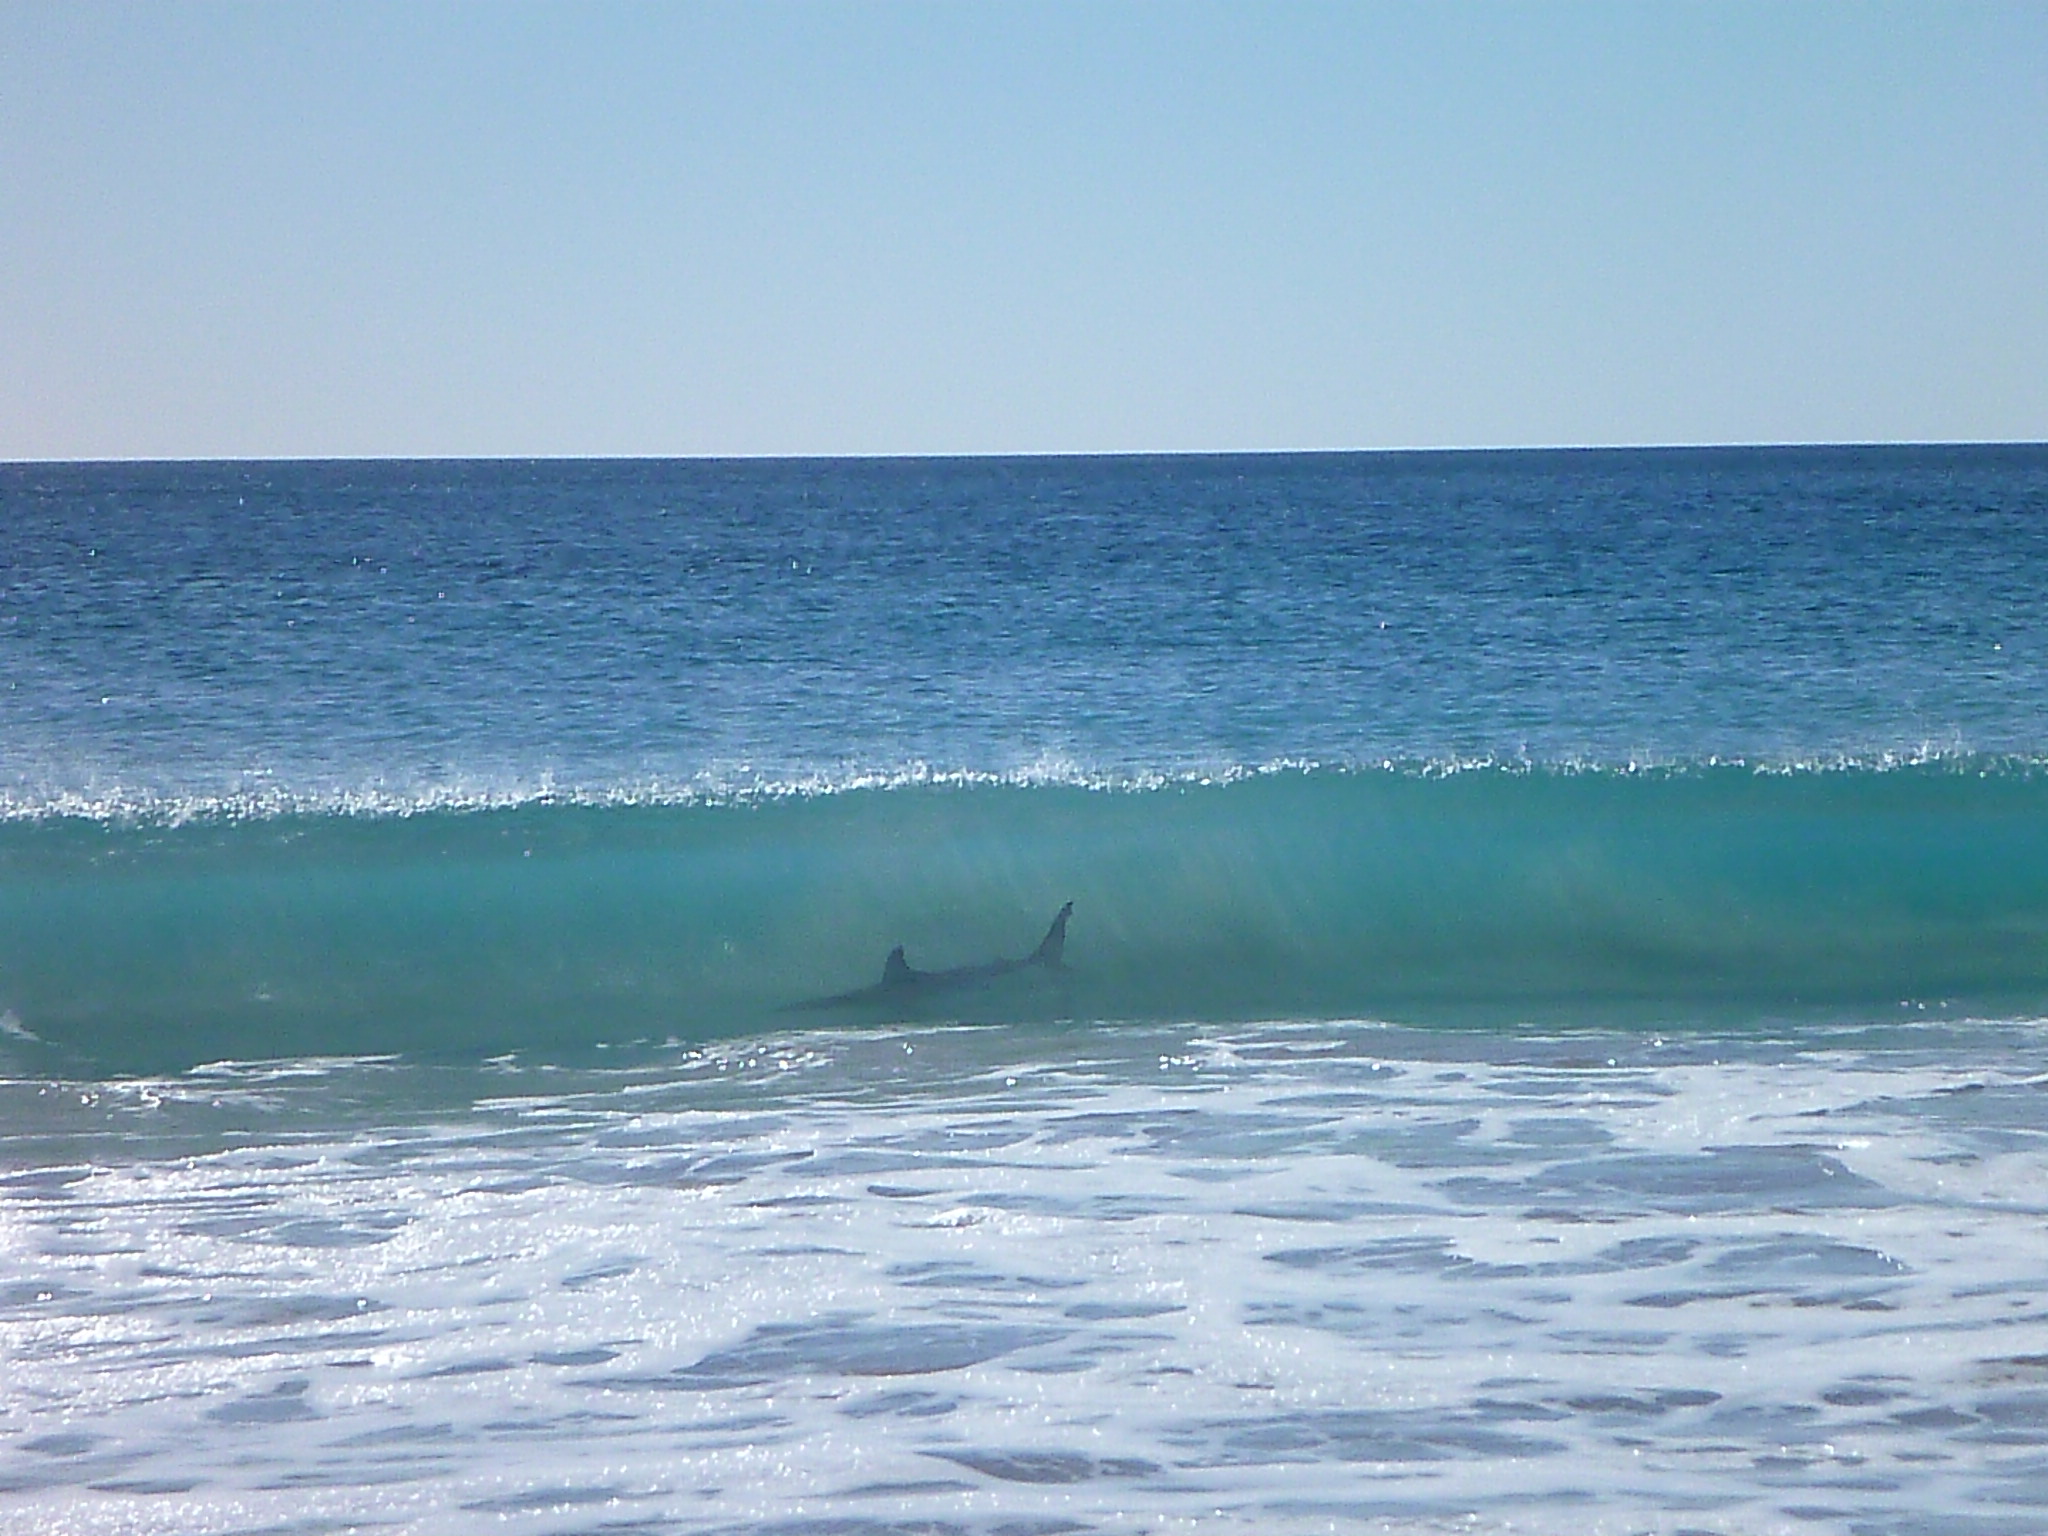 vue d une requin a travers une vague